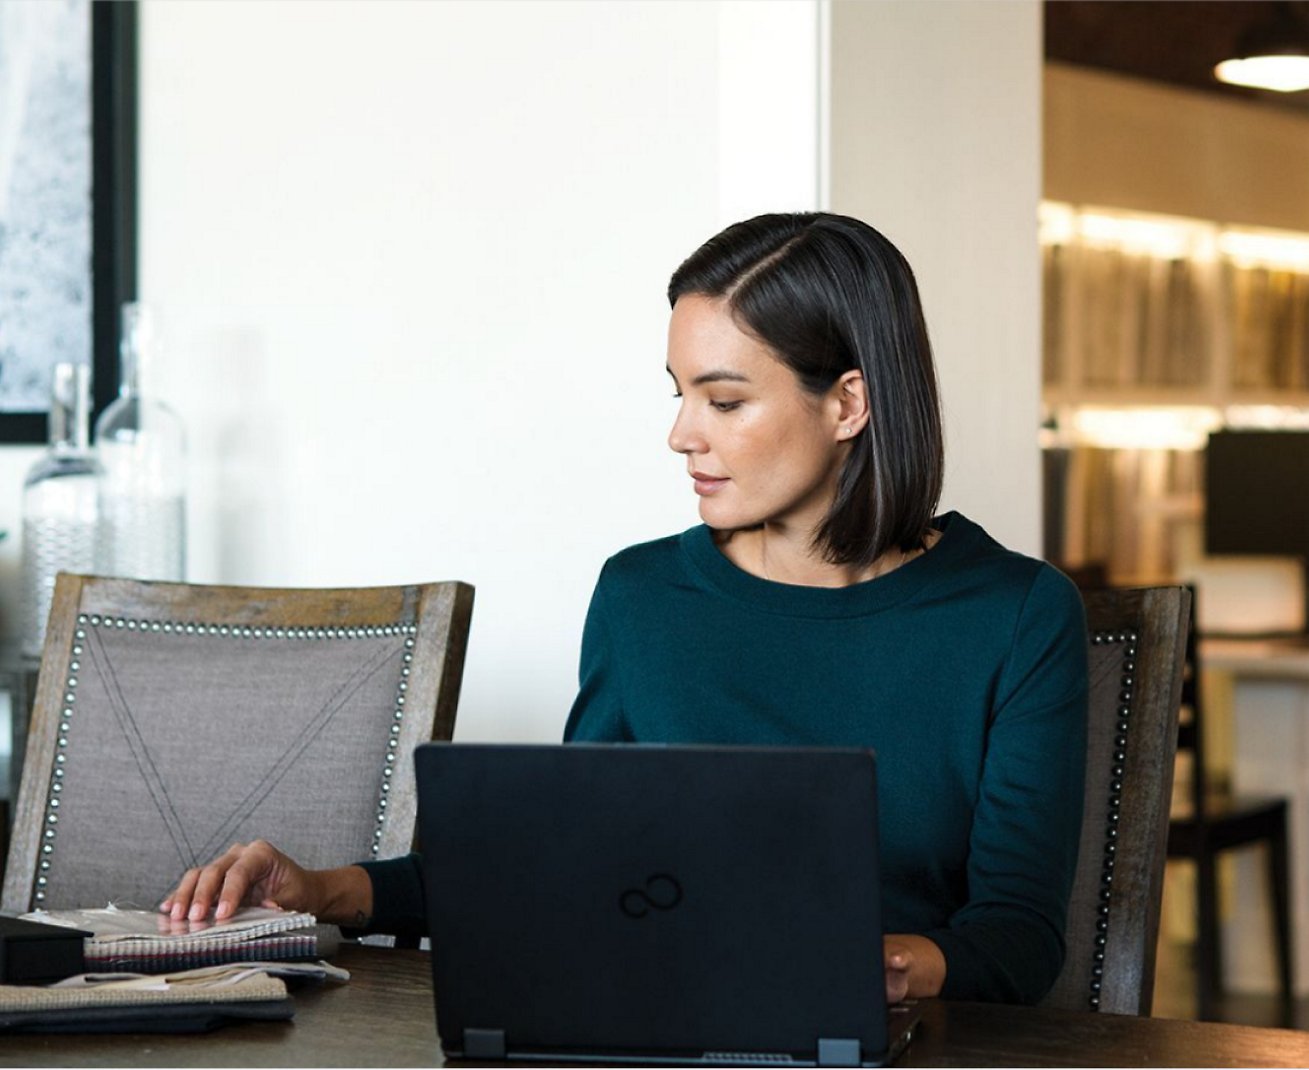 ノート PC で作業している女性と、テーブルの上に置かれたノートブック PC